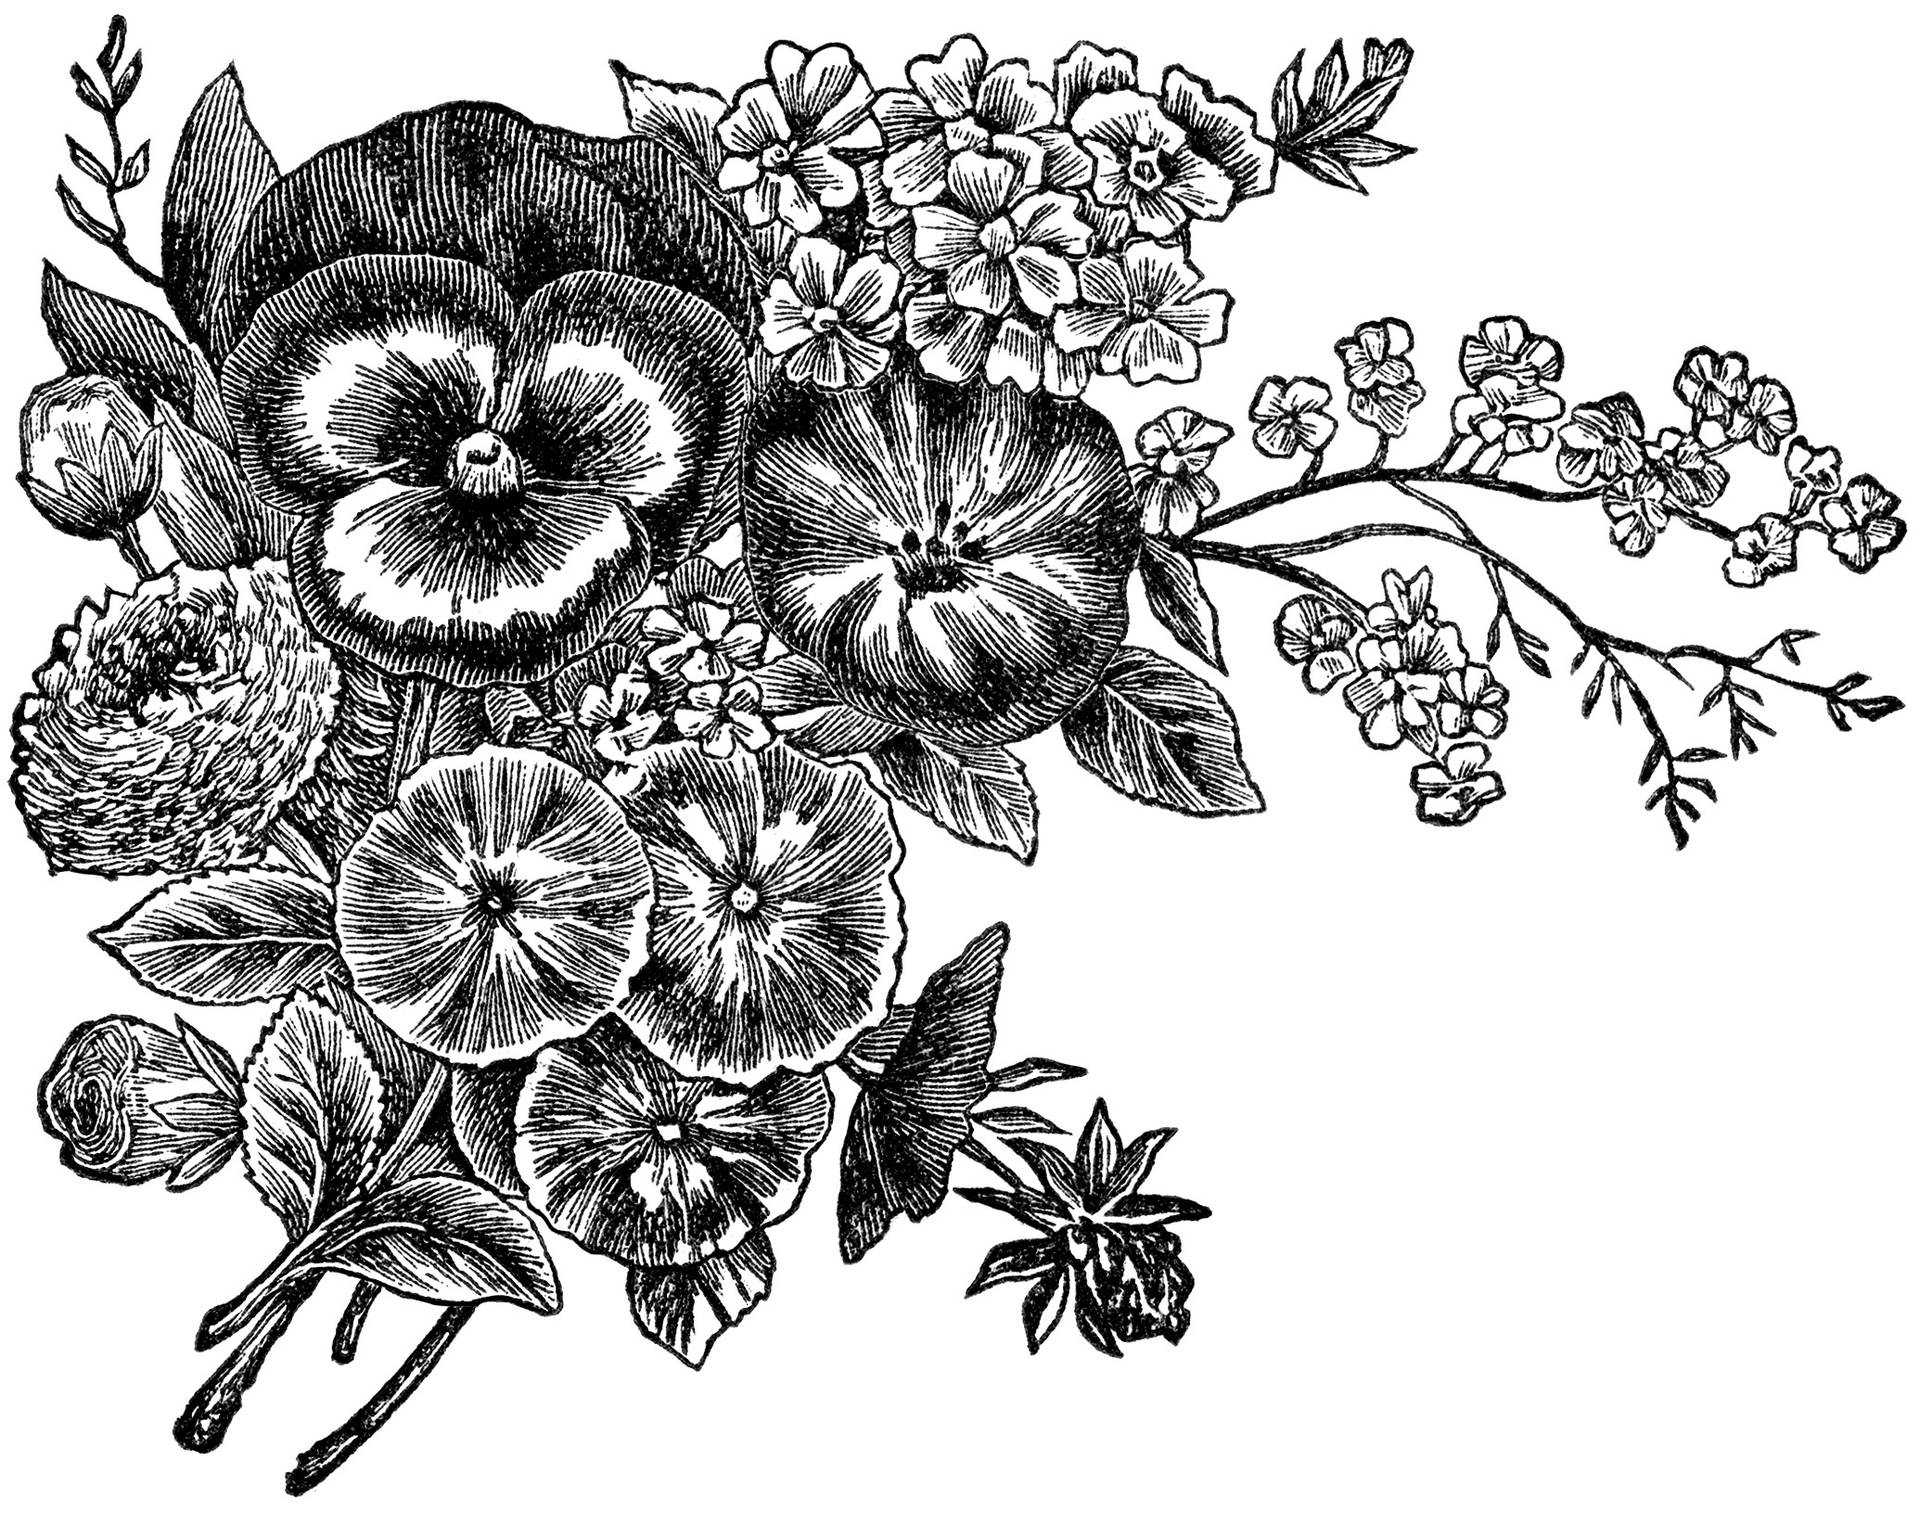 Striking Black and White Flower Illustration Wallpaper